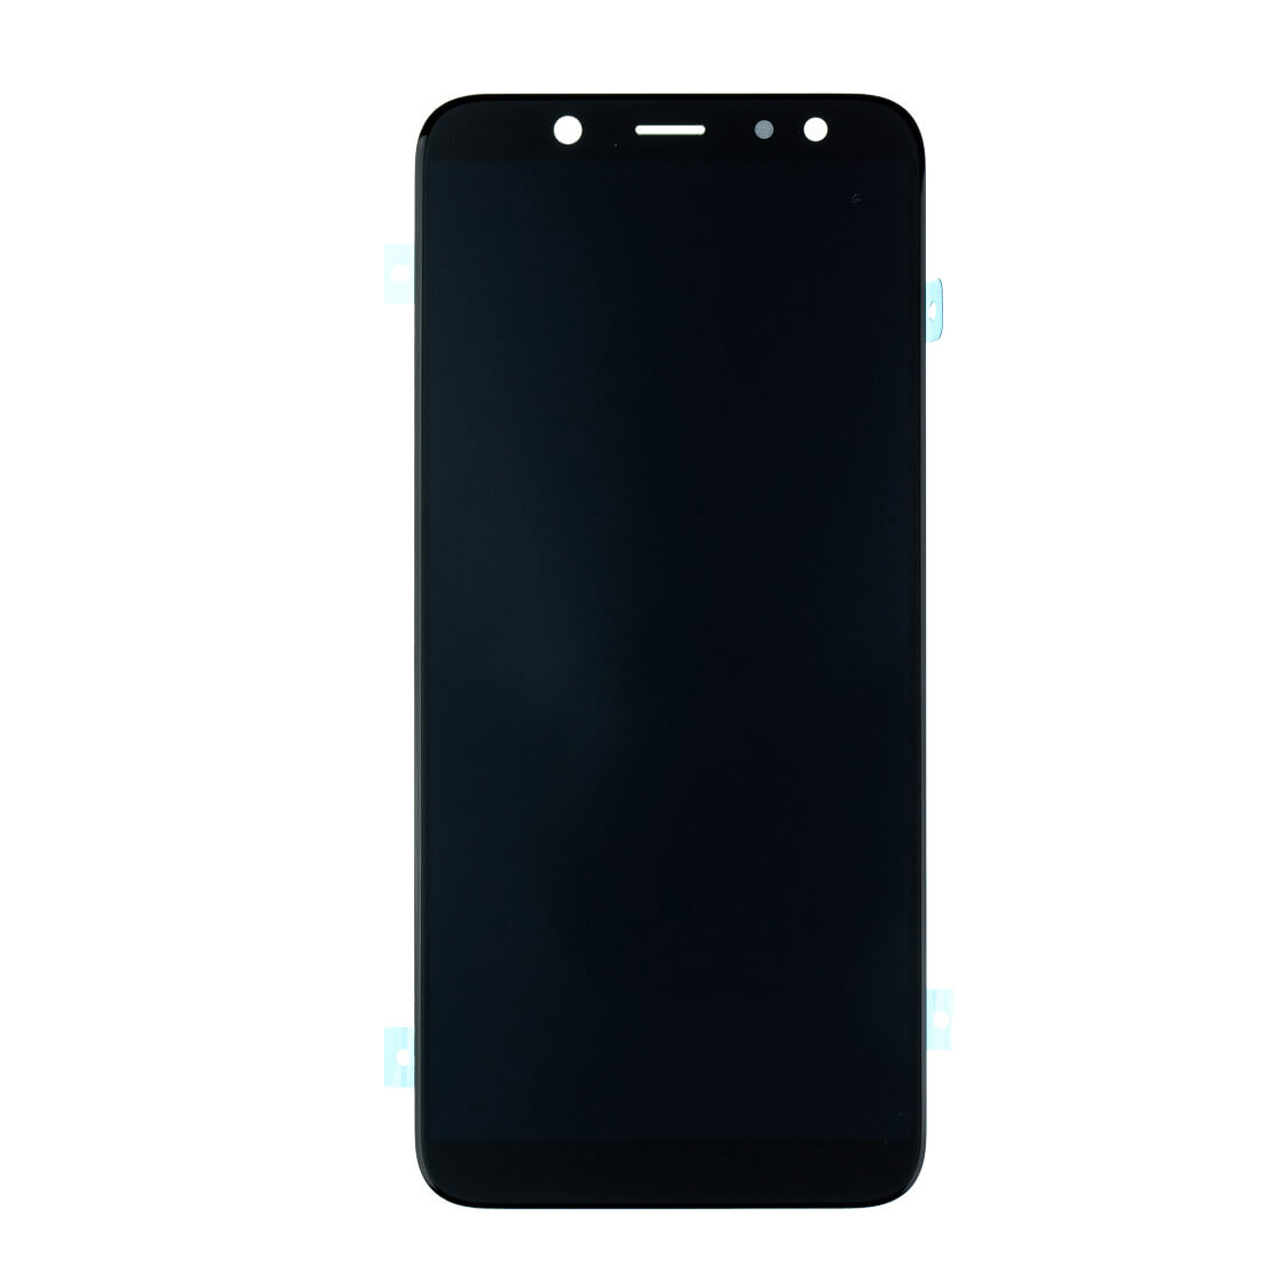 صفحه نمایش سامسونگ مدل SM-A600 مناسب برای گوشی موبایل سامسونگ Galaxy A6 2018